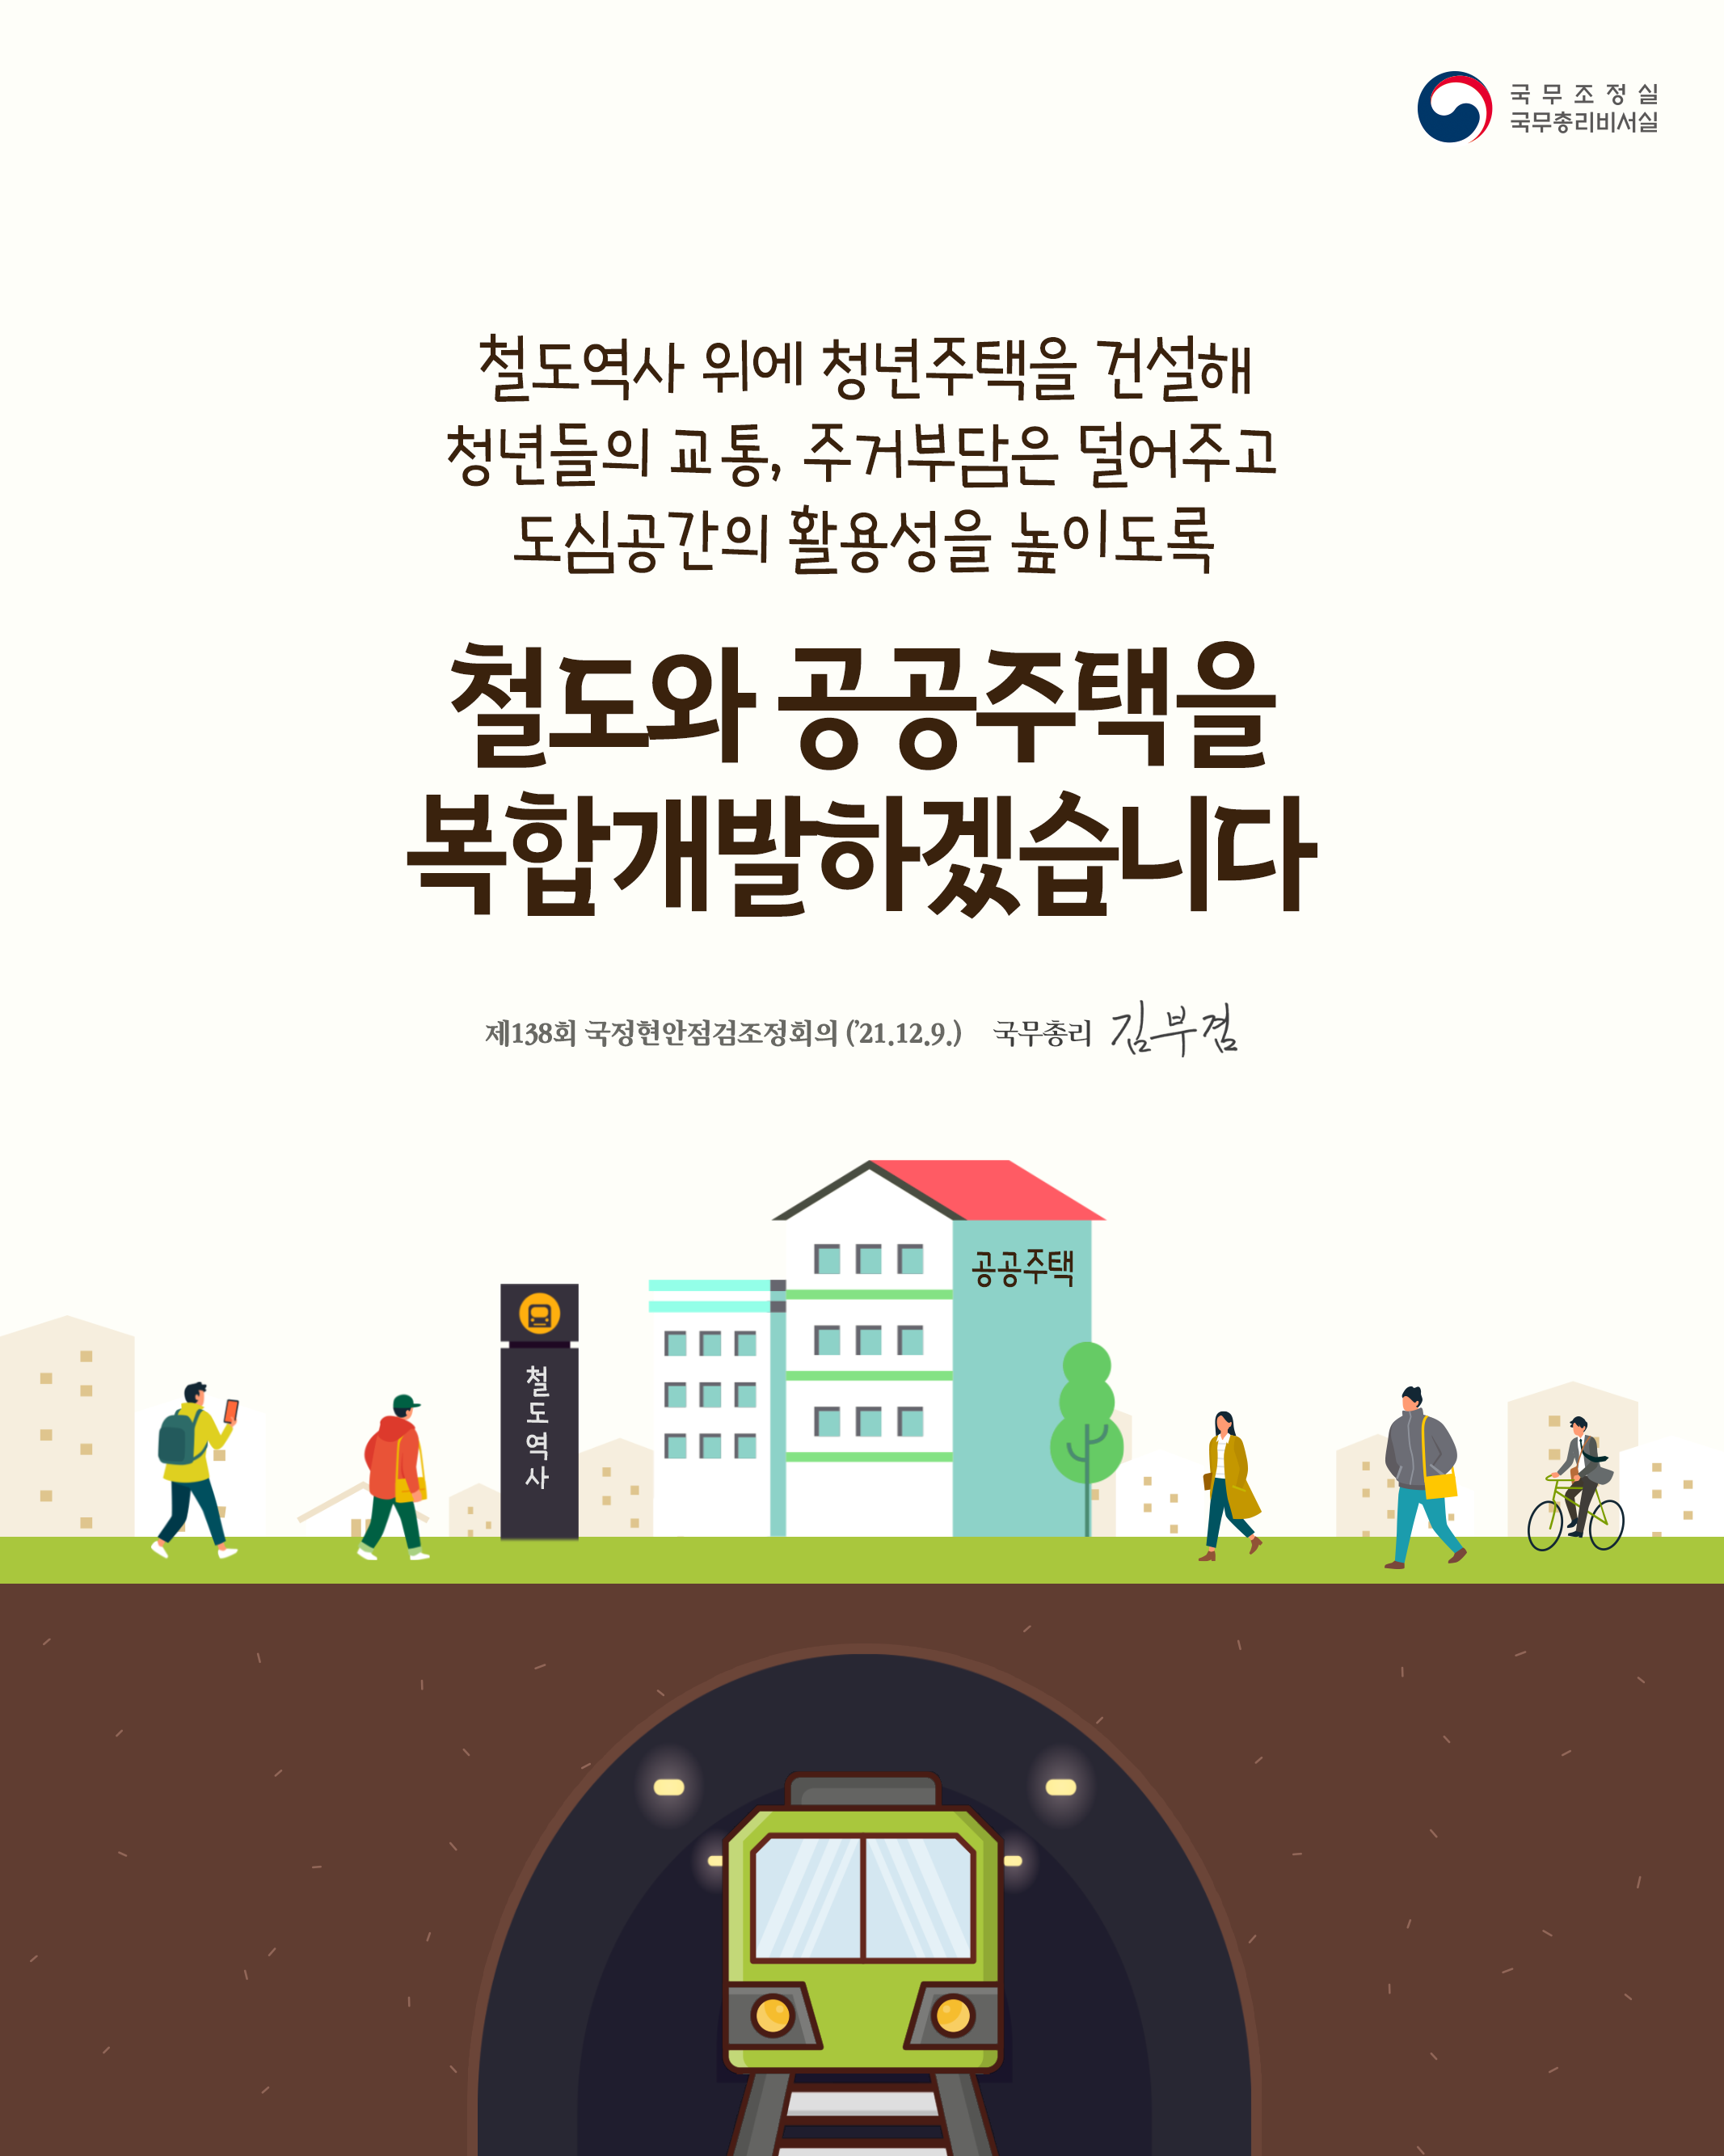 [제138회 국정현안점검조정회의] 철도와 공공주택을 복합개발하겠습니다